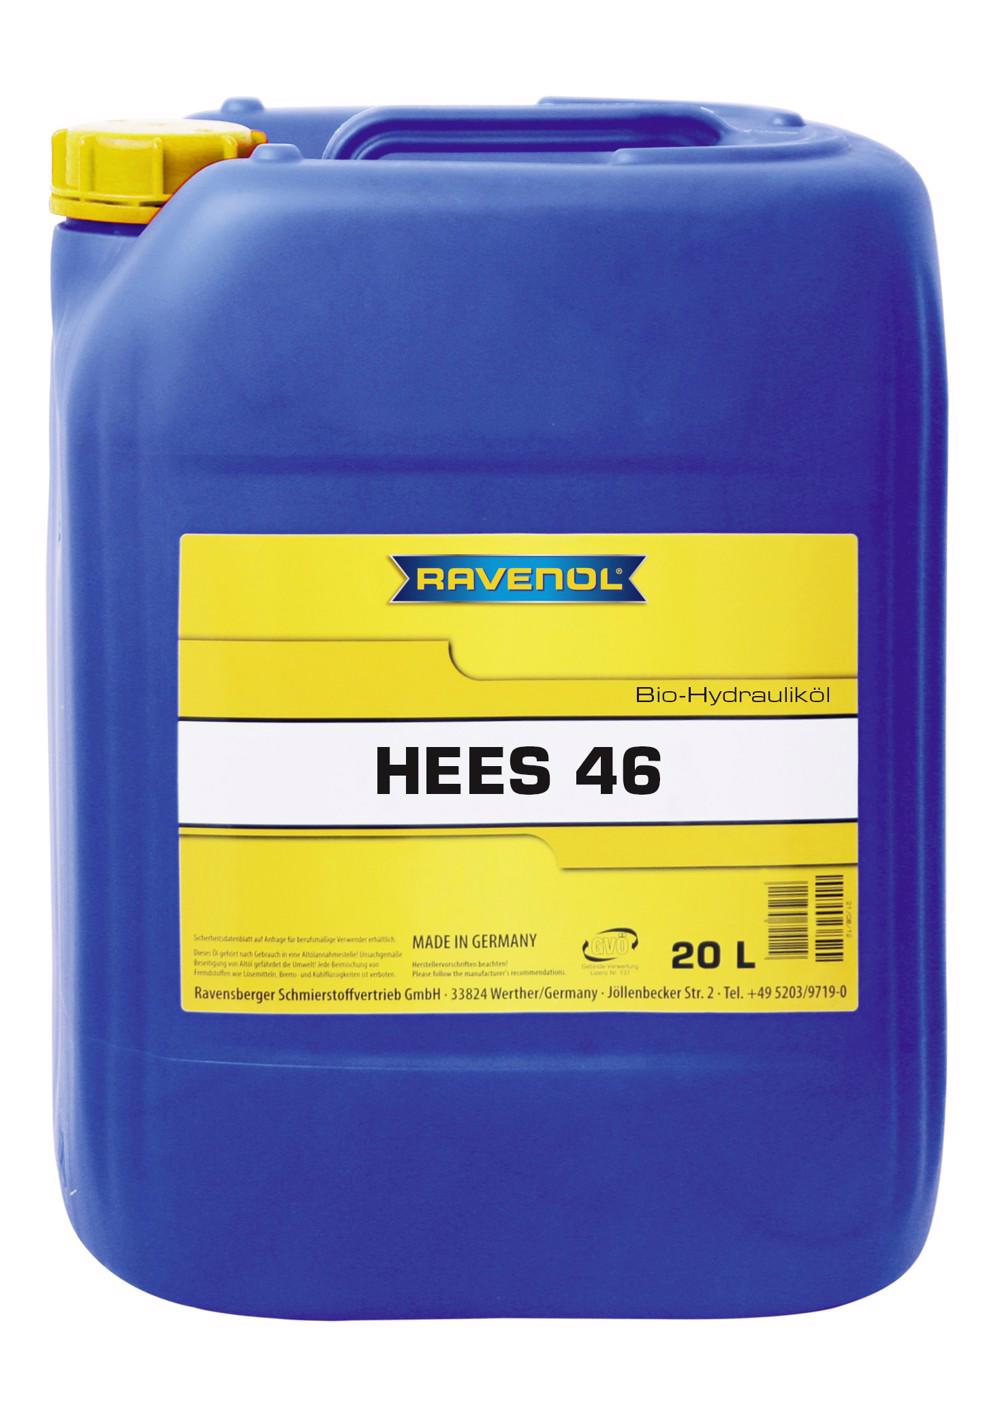 RAVENOL Bio-Hydraulikoel HEES 46  20 L